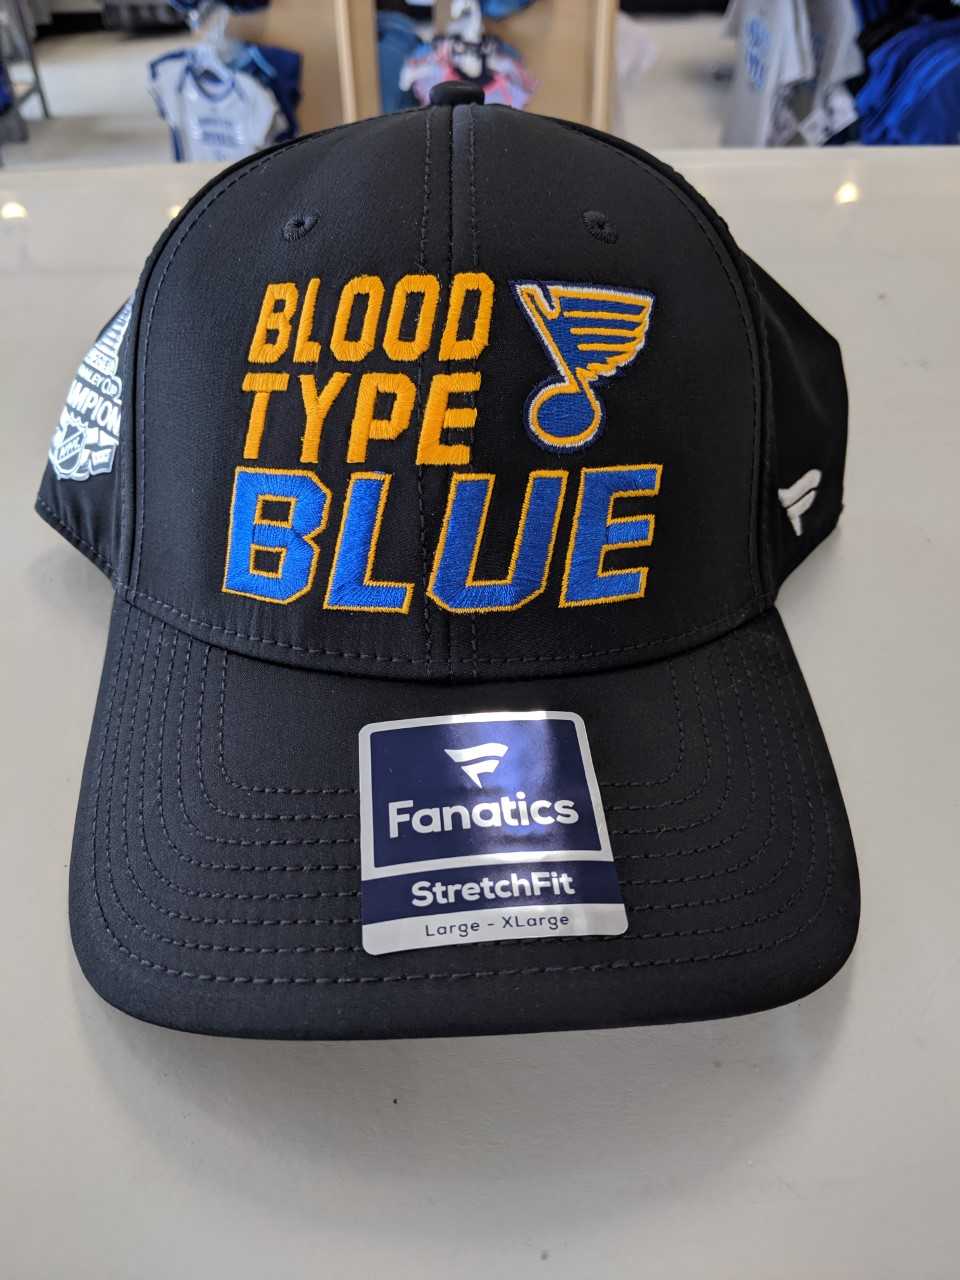 St. Louis Blues Authentic 2019 Blood Type Blue Flex Fit Hat by